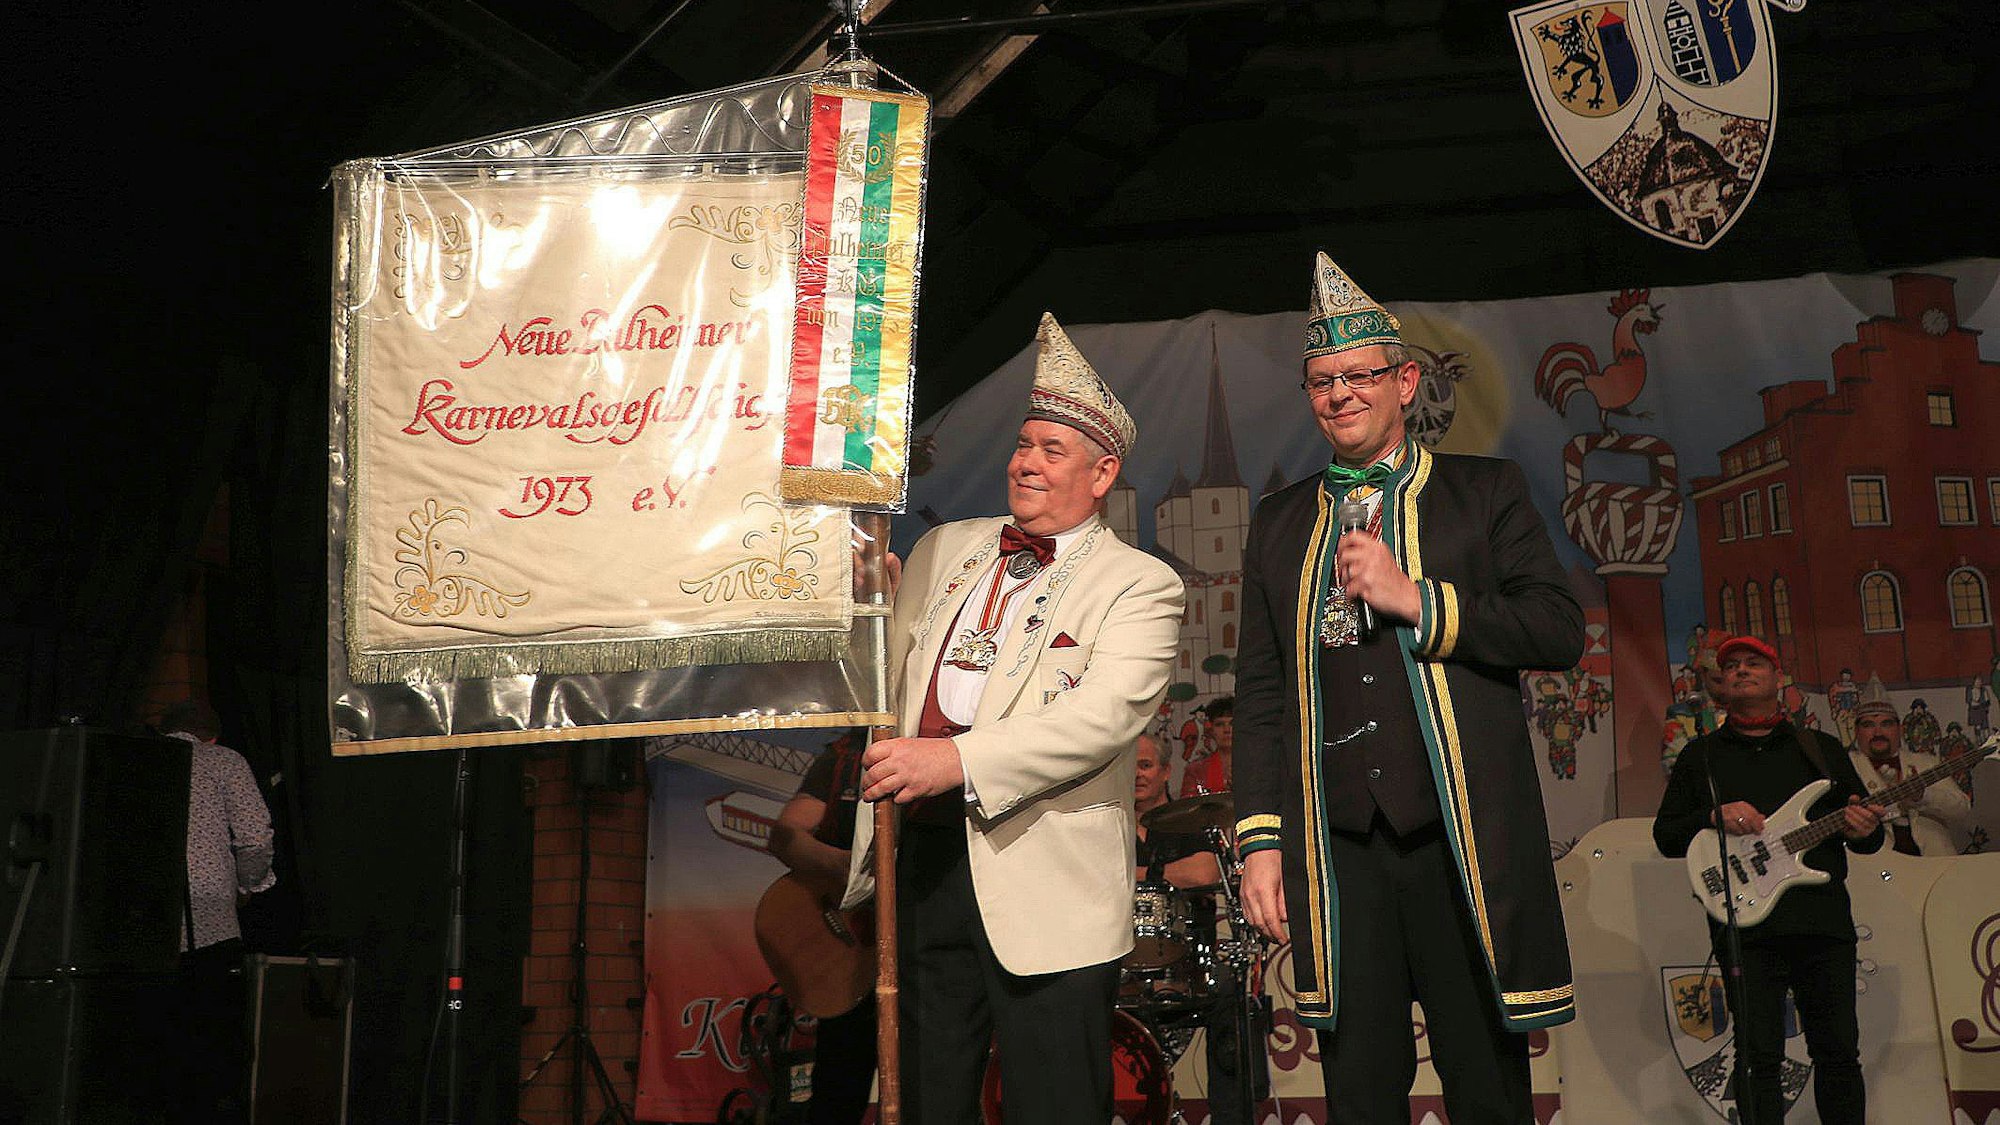 Eine Fahnenschleife für die Standarte hatte Wolfgang Schreck vom Karnevalsverband Rhein-Erft dabei.